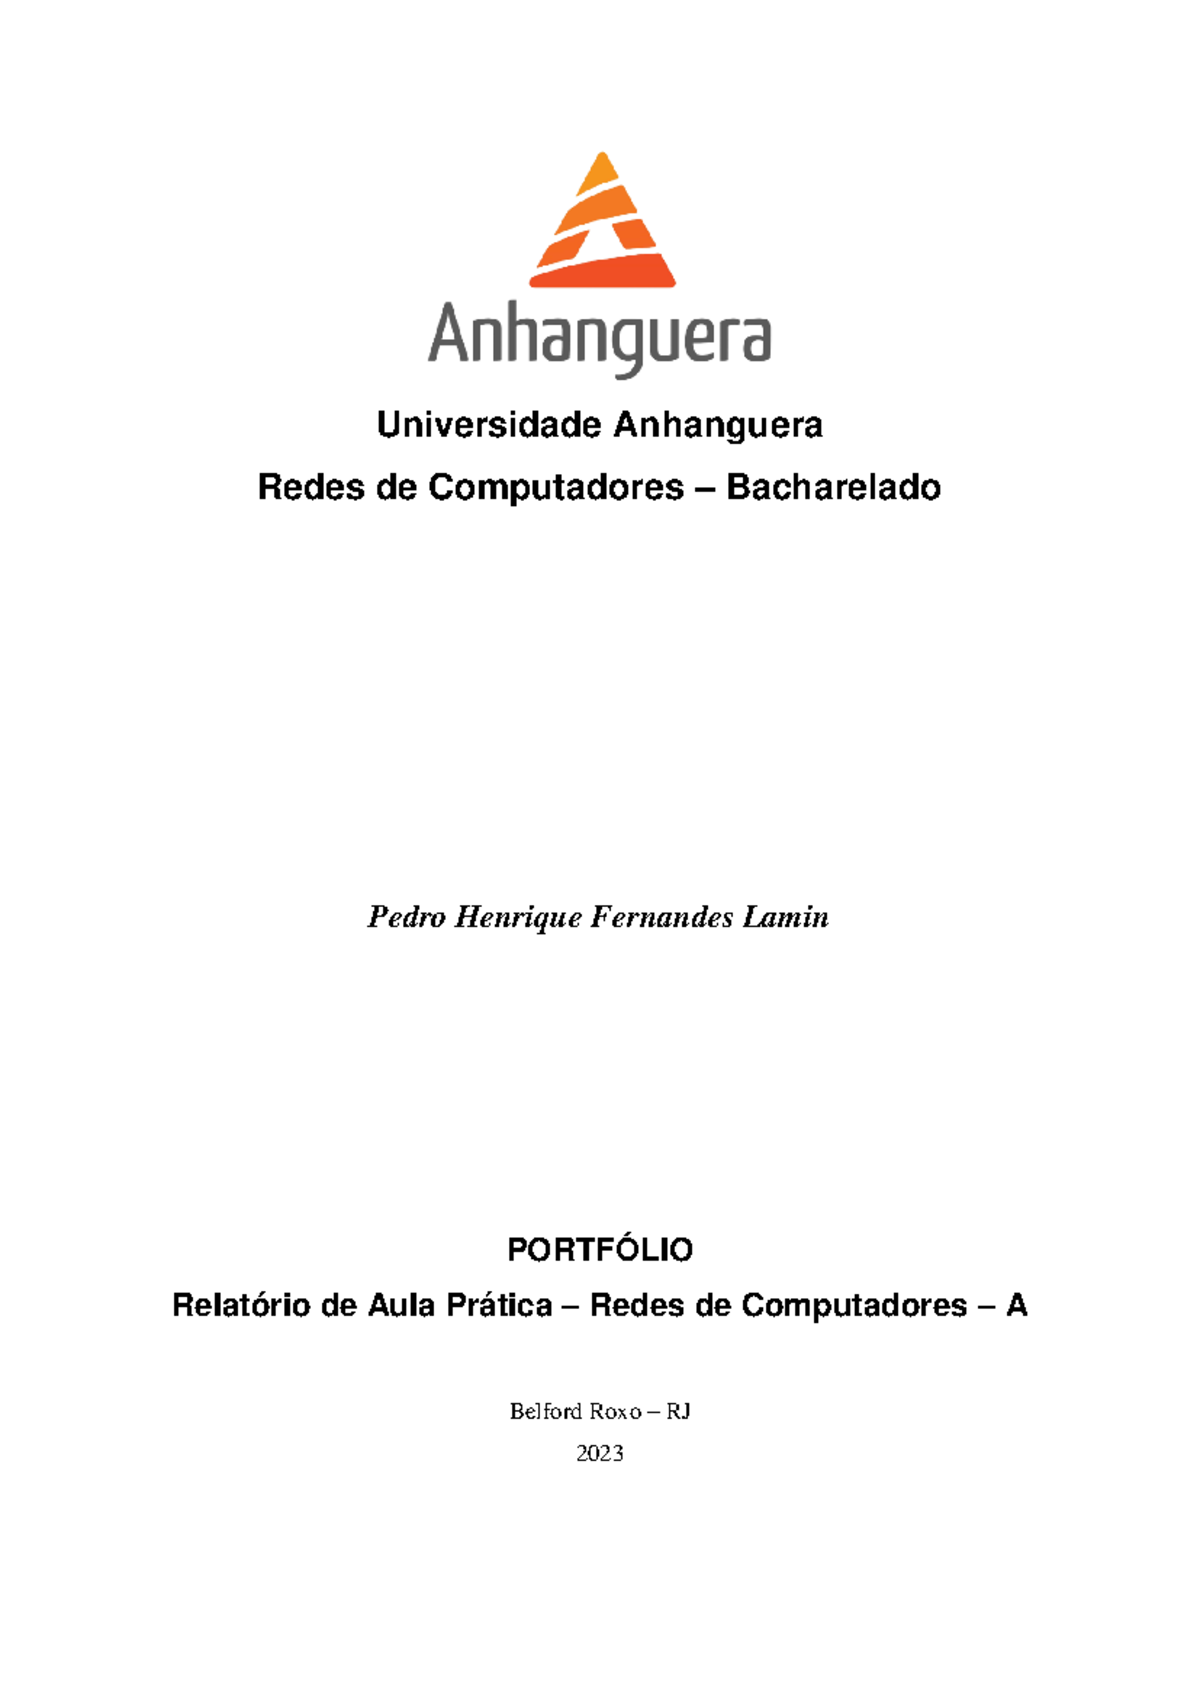 Relat Rio De Aula Pr Tica Redes De Computadores A Universidade Anhanguera Redes De Studocu